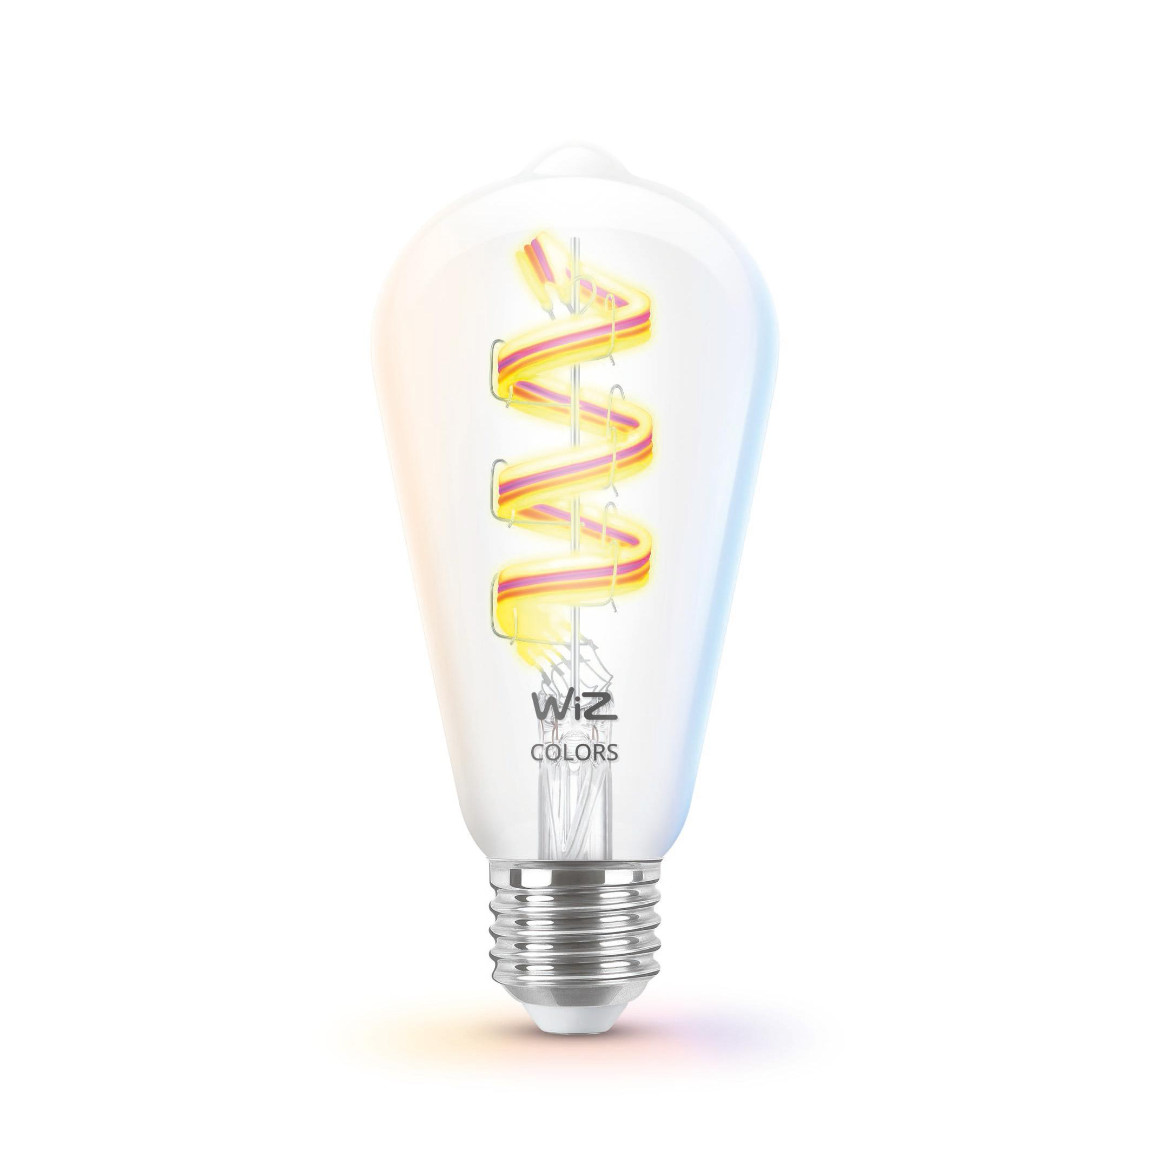 WiZ Tunable White & Color E27 ST64 40W - Smarte Filament Lampe - Weiß